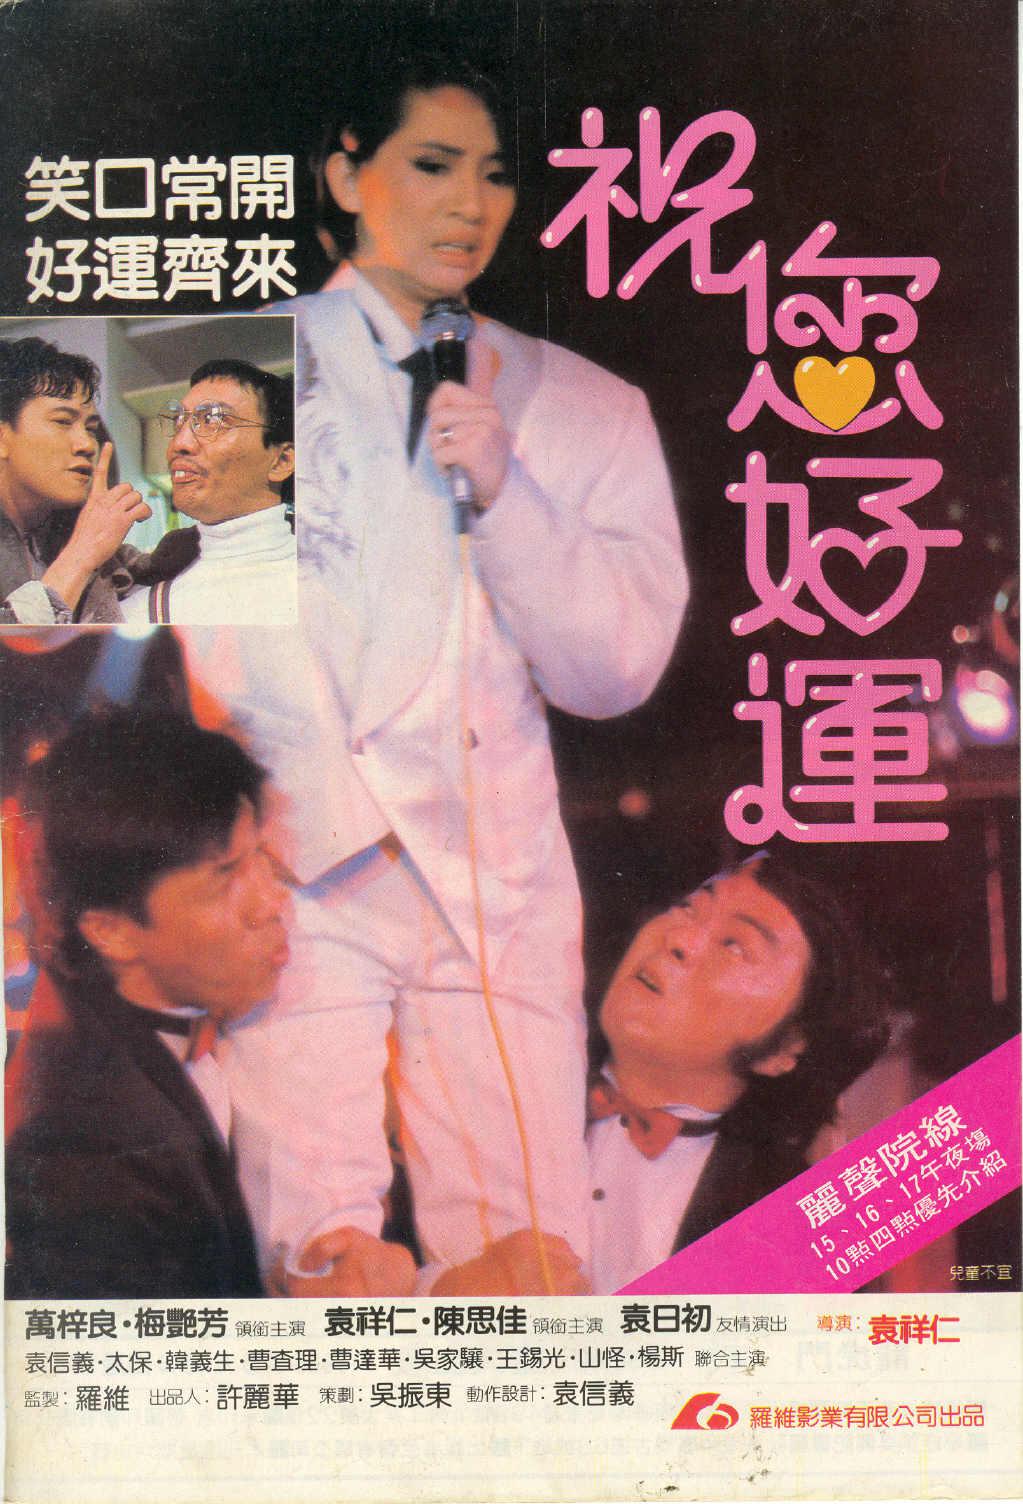 【香港經典電影系列】祝您好运 (1985) 国粤双语 繁中 / 簡中 / 英文字幕 Lucky Diamond 1985 Blu-ray 1080p AVC LPCM 2 0-MTeam    [21.92 GB ]-1.jpg